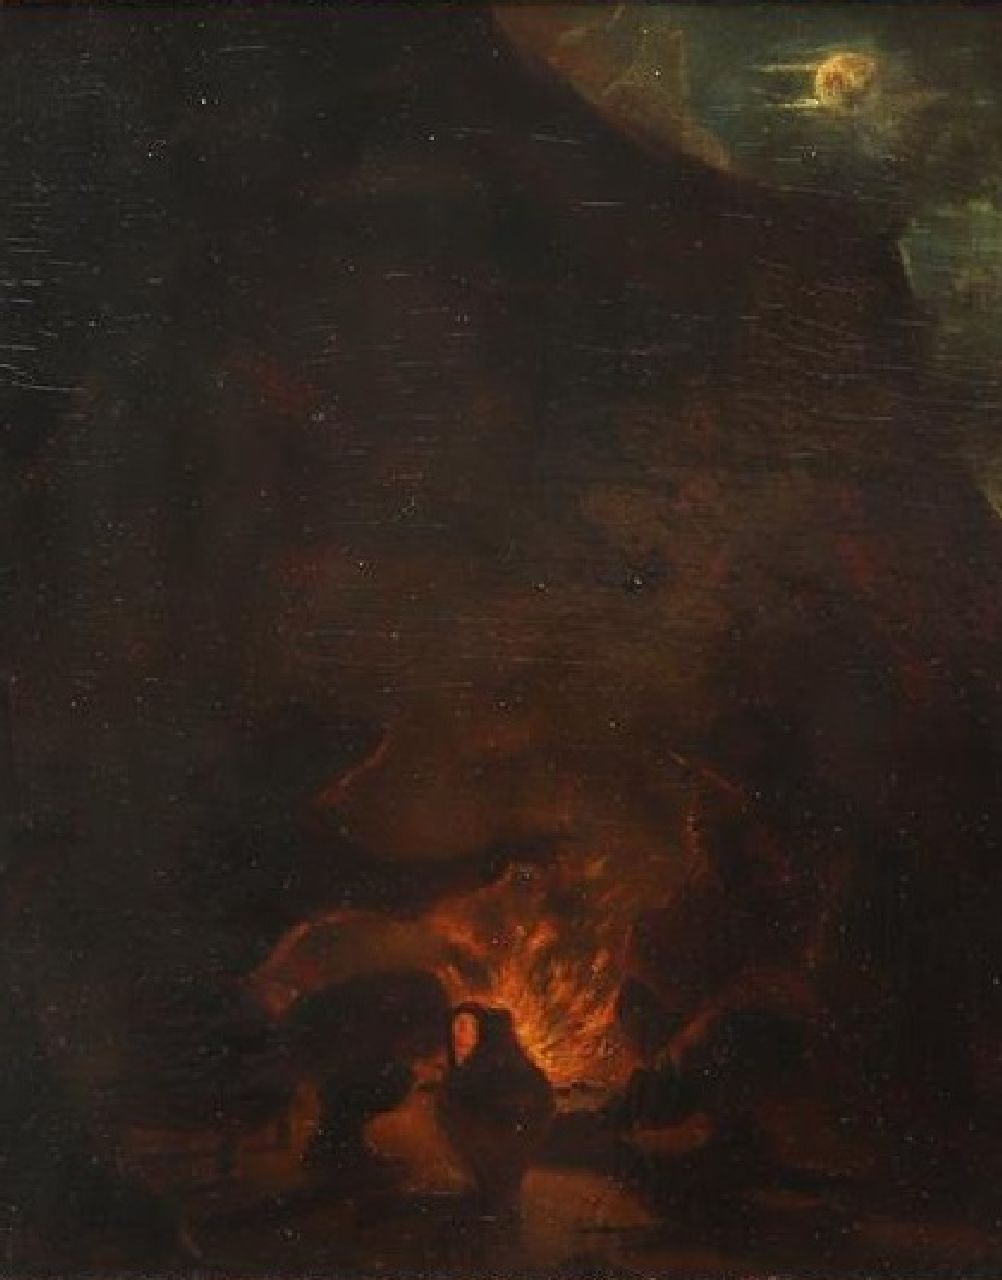 Caspar Augustinus Fischer | Figures around nocturnal campfire, oil on panel, 23.0 x 19.3 cm